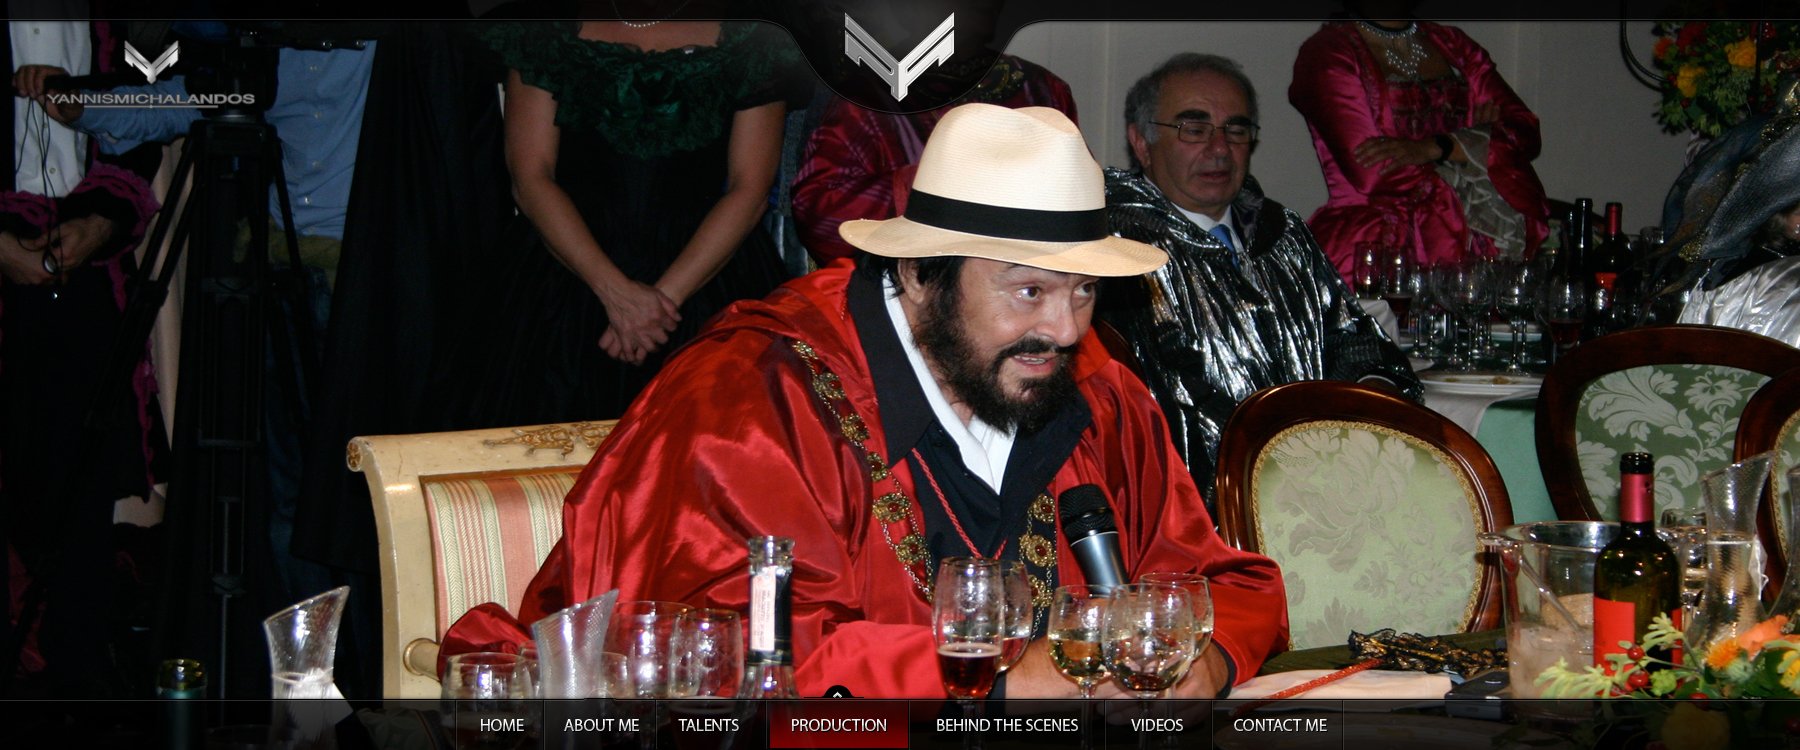 Pavarotti's 70th Birthday Party, Bologna